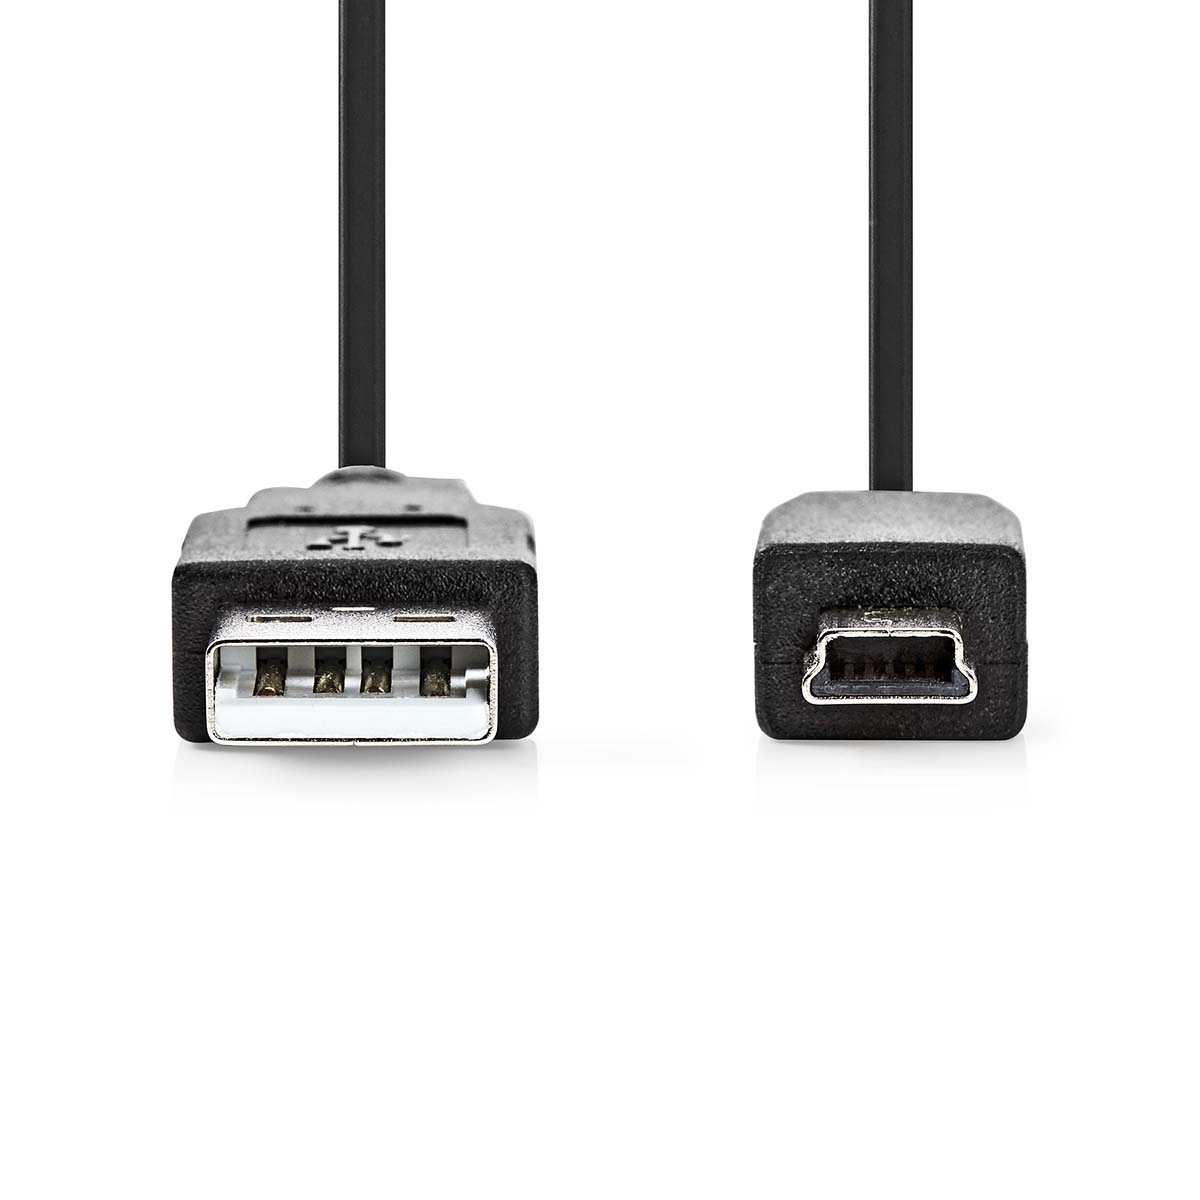 NEDIS USB-Kabel CCGP60300BK30